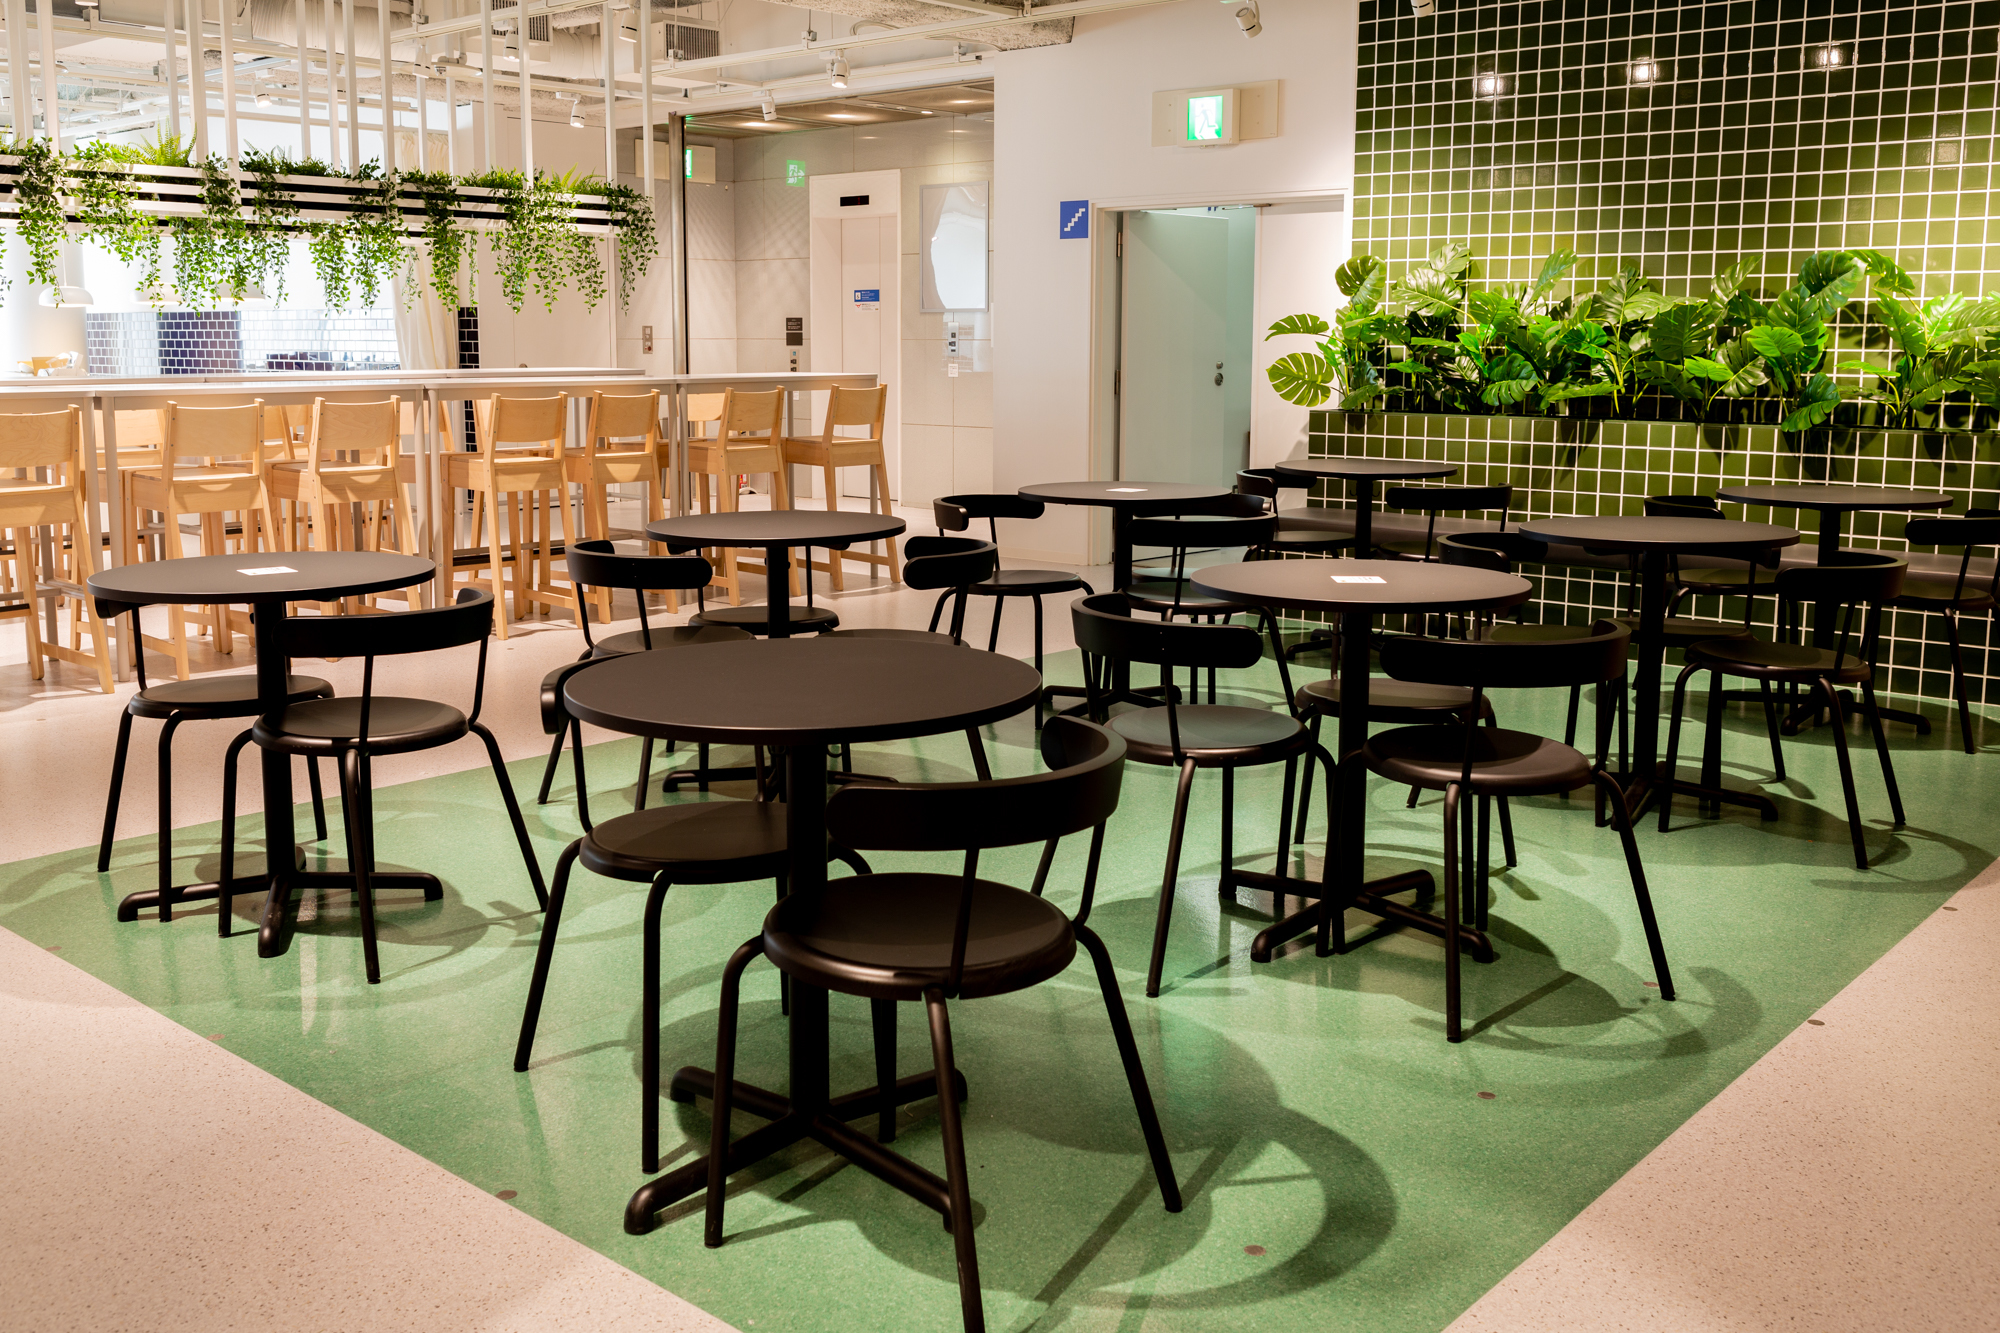 gunstig Vrijgevigheid Ontmoedigd zijn Ikea is opening a new restaurant in Shibuya serving Swedish food